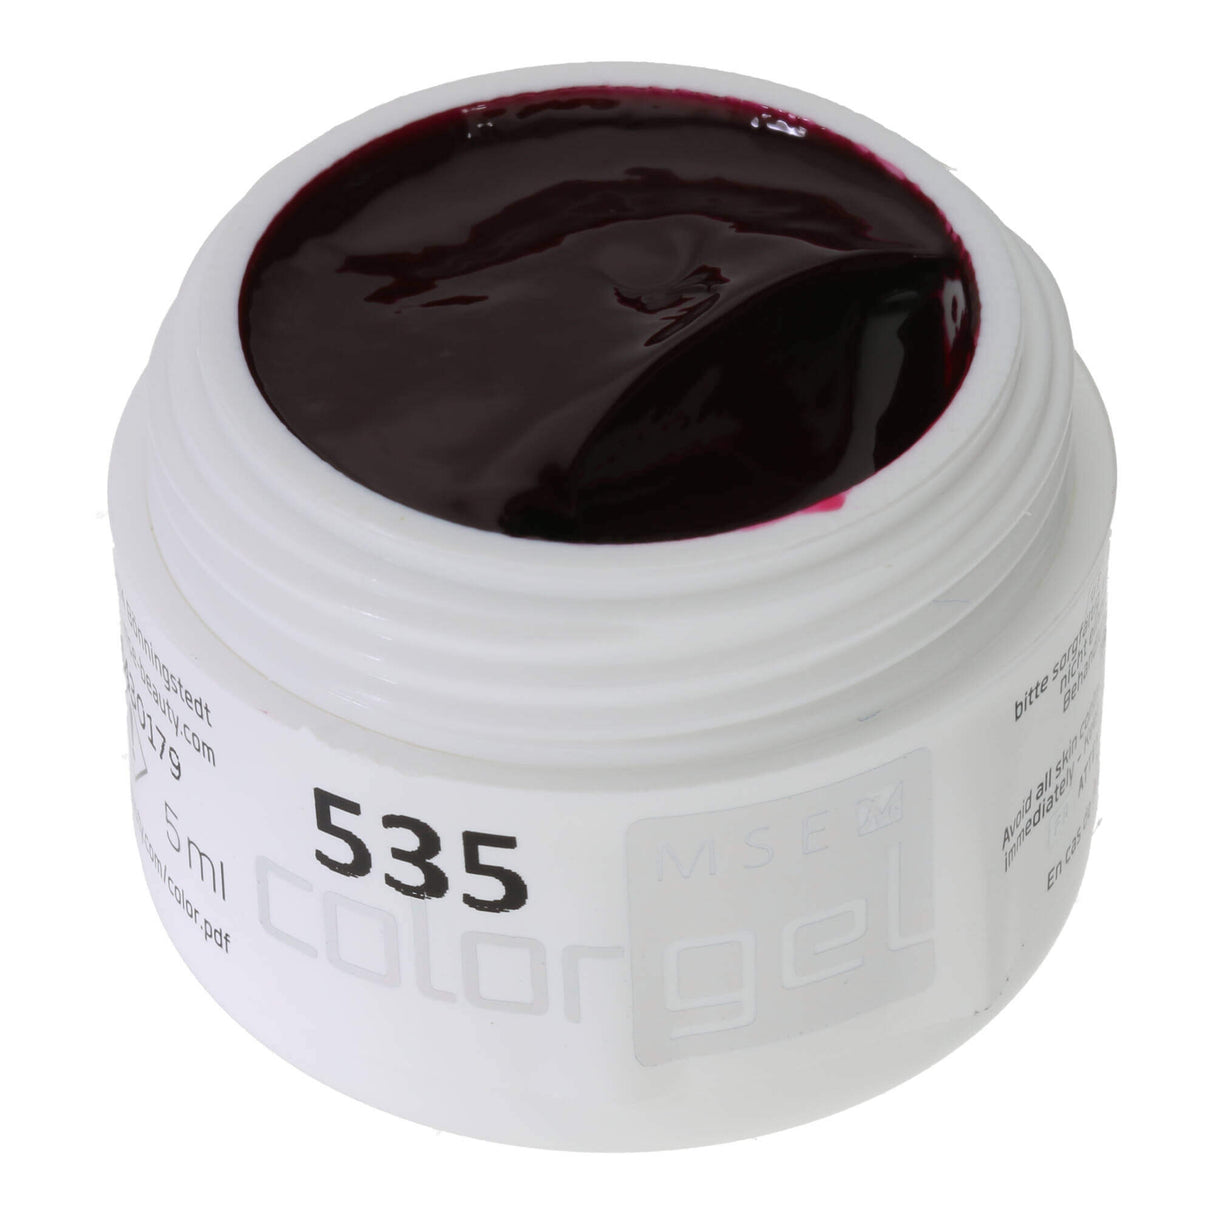 # 535 Premium-PURE Color Gel 5ml Red